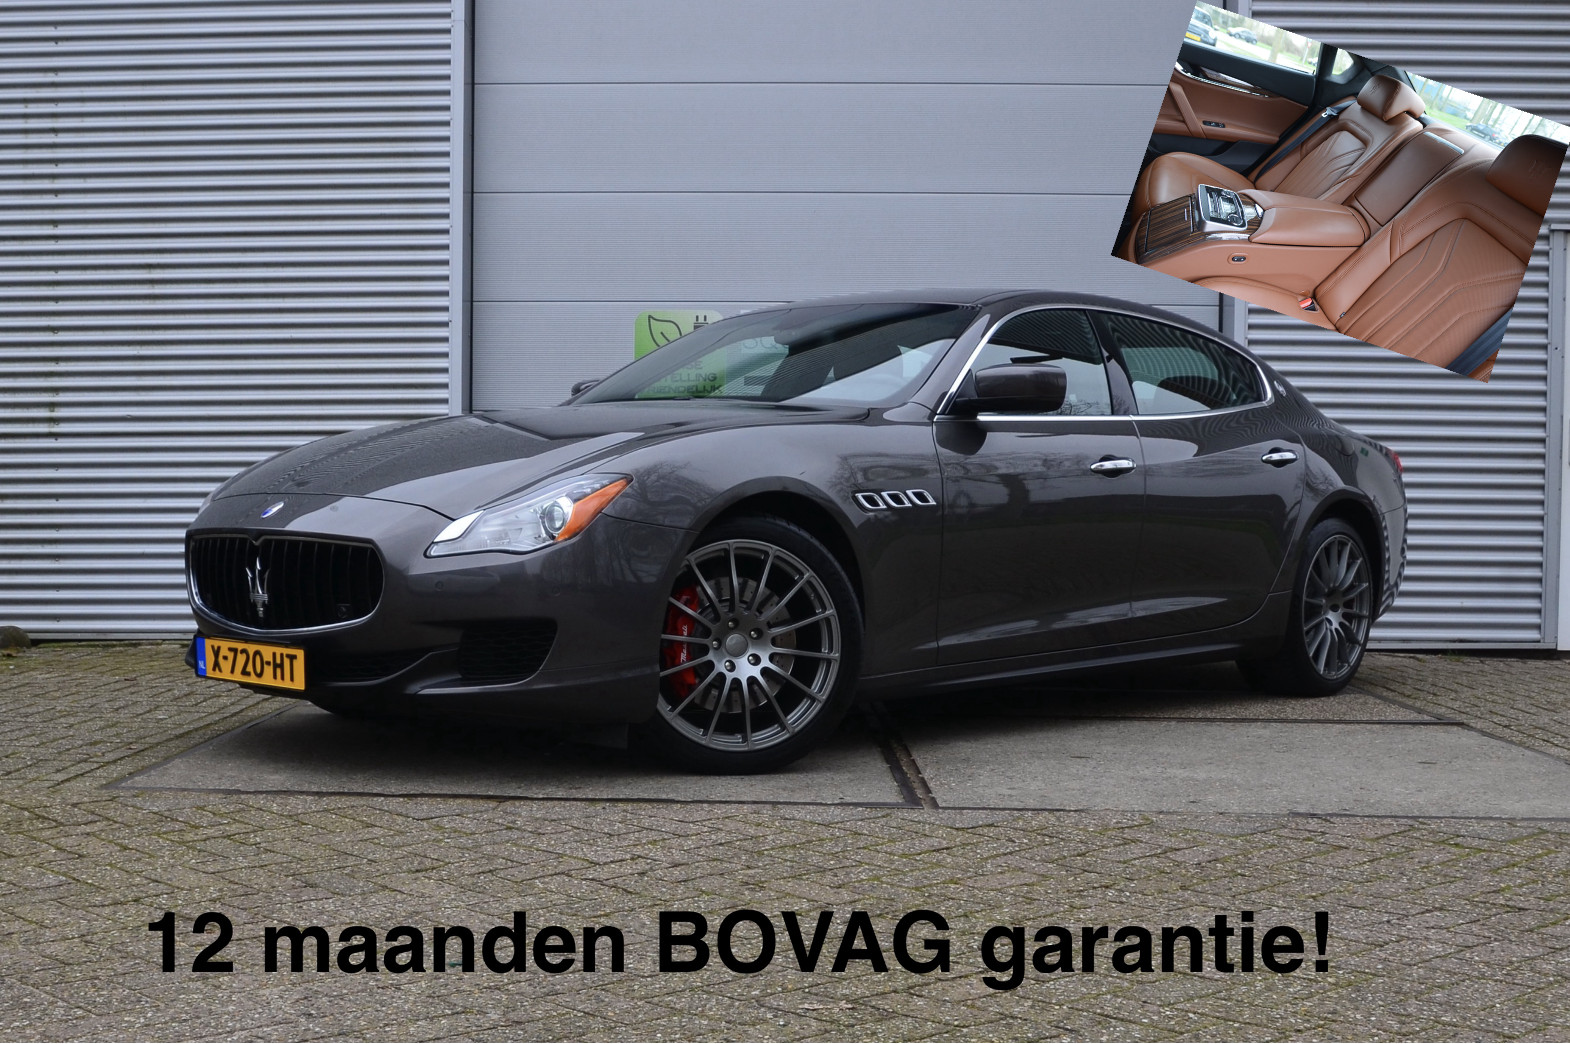 Maserati Quattroporte 3.0 S Q4 (4x4) Leder, 4-zits, Navi, fin. 1.007,- p/mnd bij viaBOVAG.nl